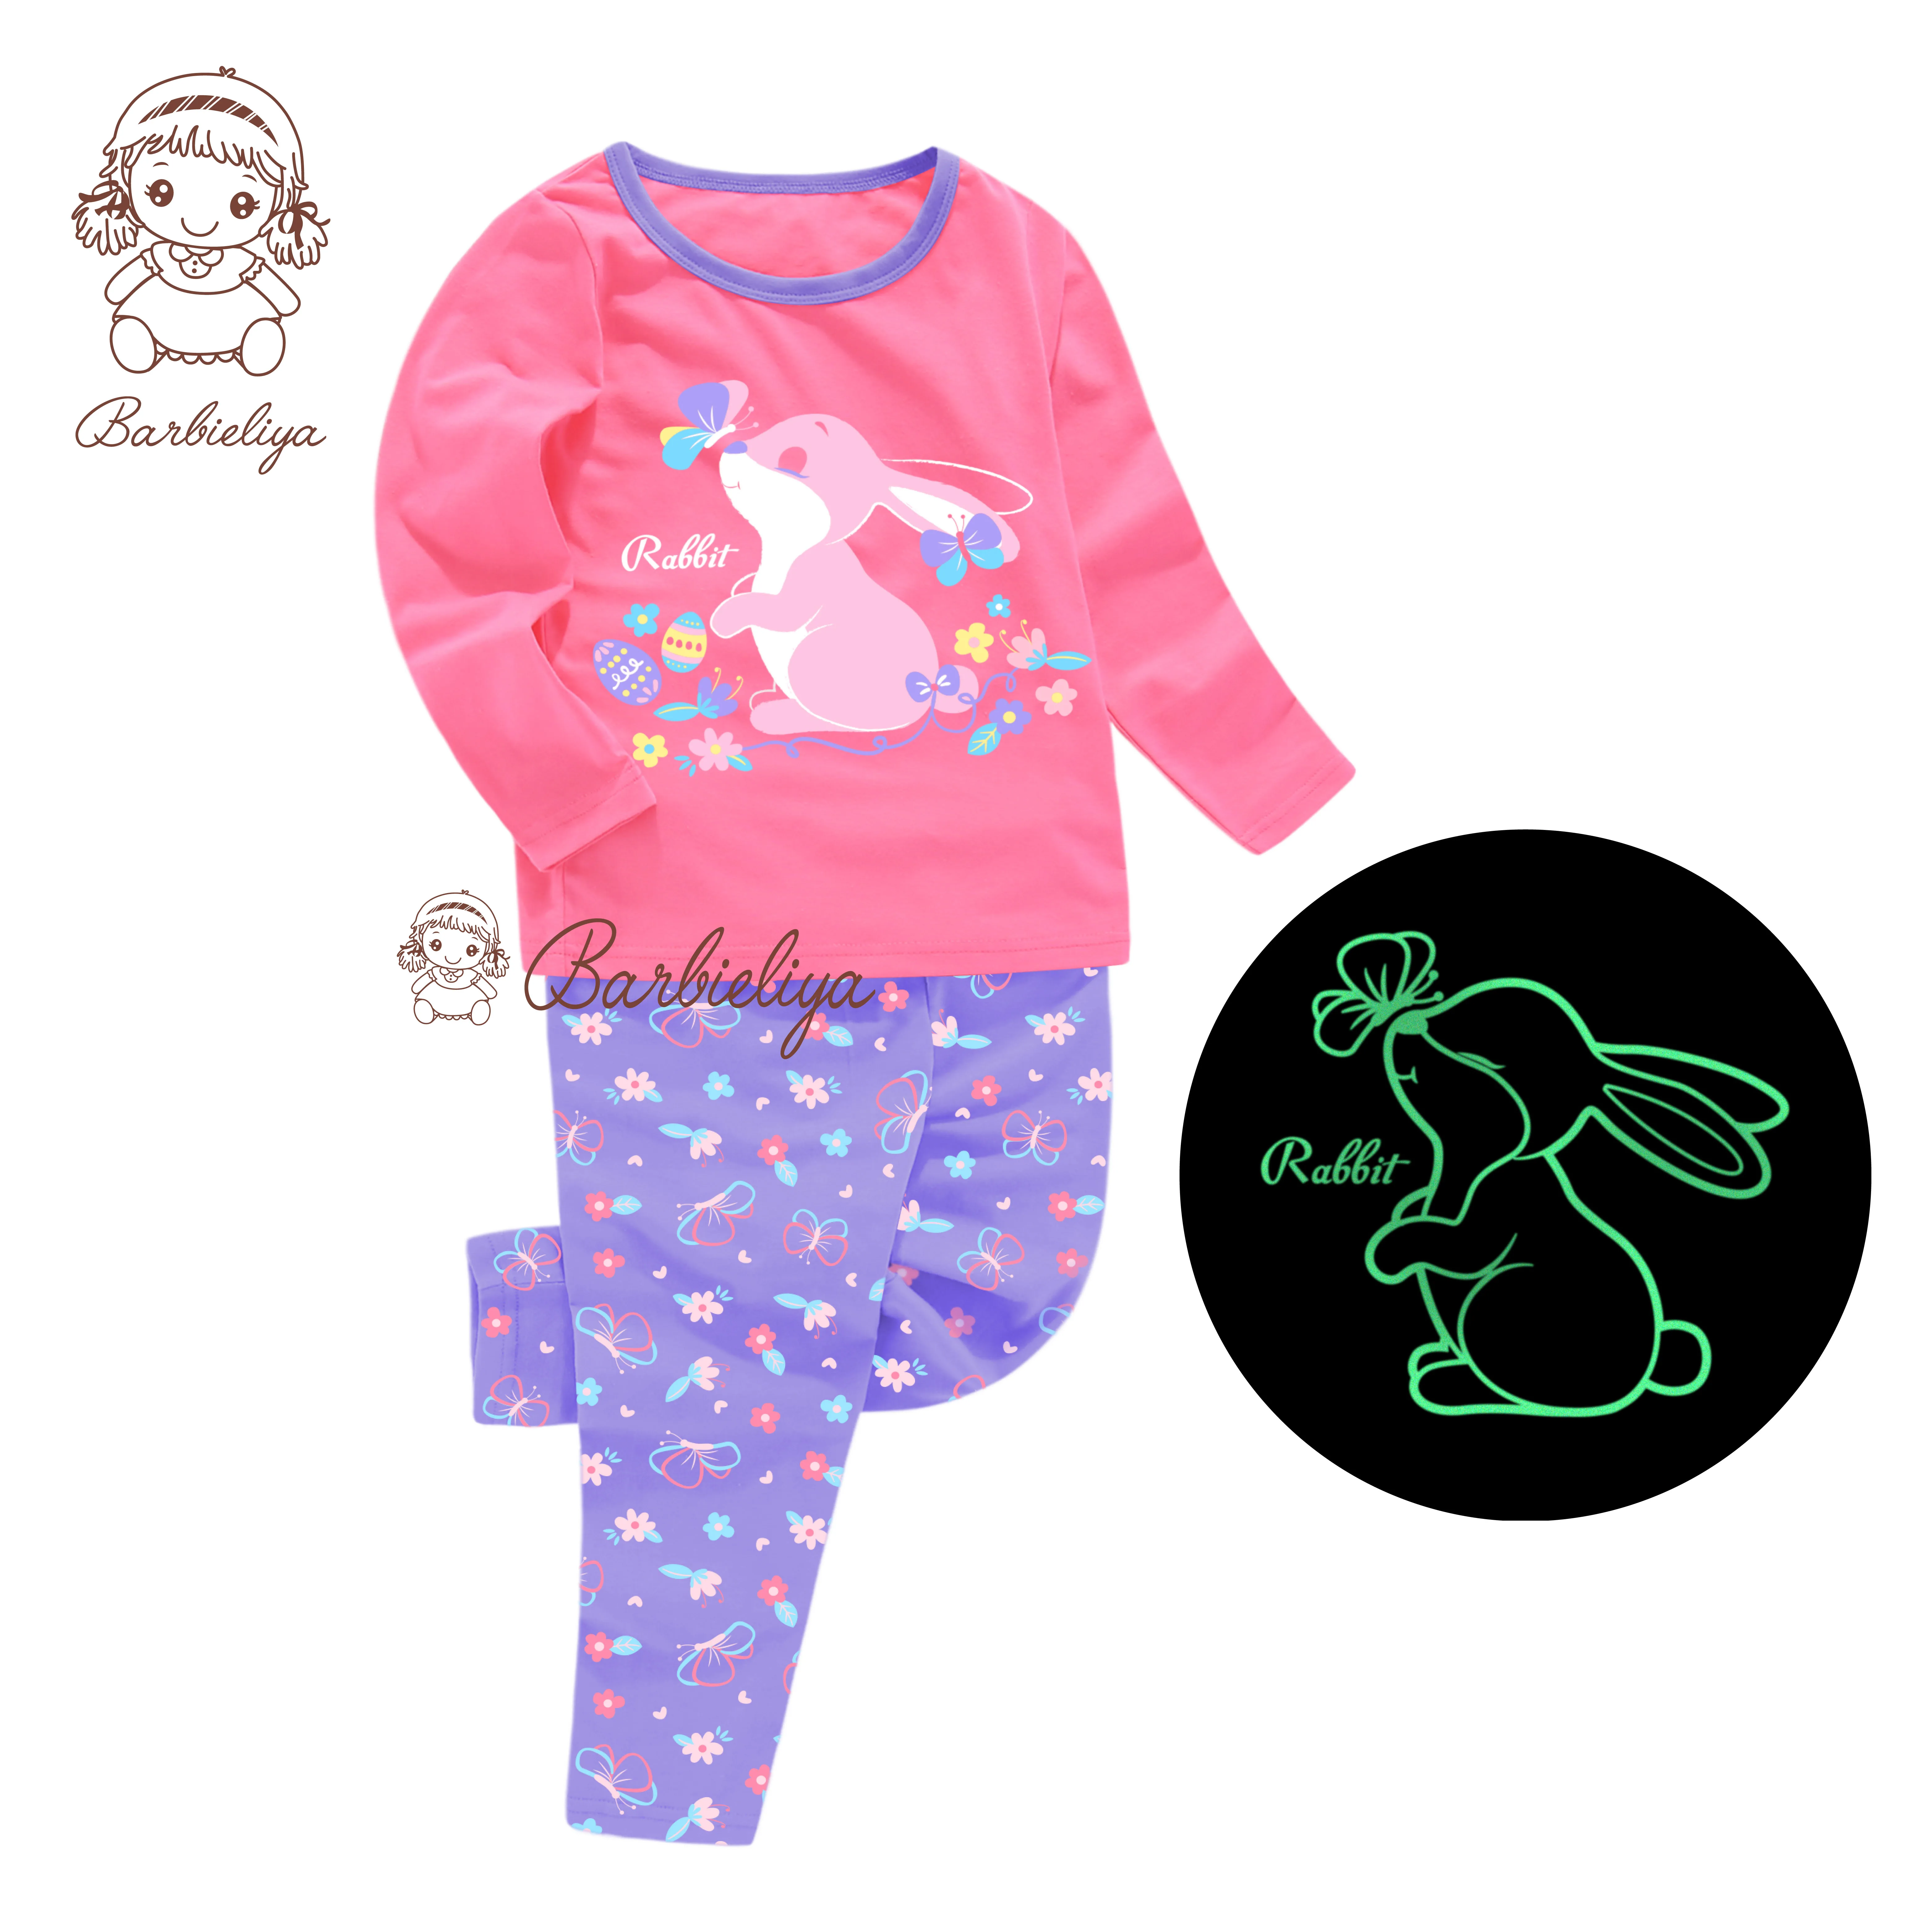 

boy girl pure cotton unicorn clothing glow in the dark sample brand pyjamas children sleepwear wholesale pyjamas kids pajamas